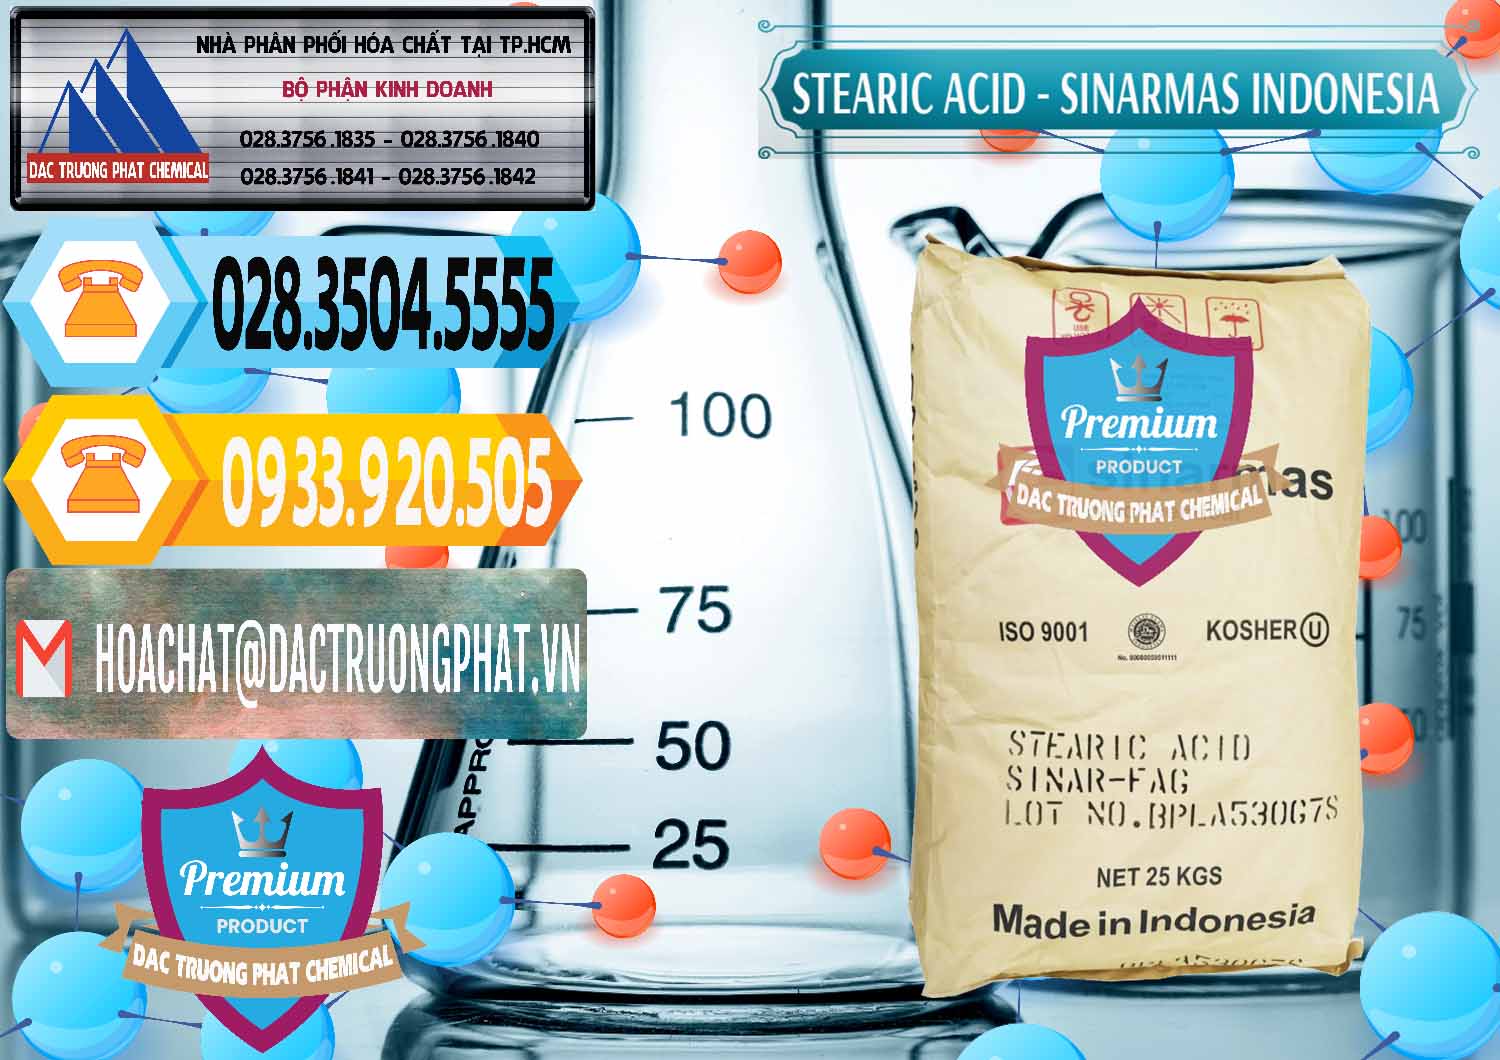 Nhập khẩu & bán Axit Stearic - Stearic Acid Sinarmas Indonesia - 0389 - Cty bán _ cung cấp hóa chất tại TP.HCM - hoachattayrua.net